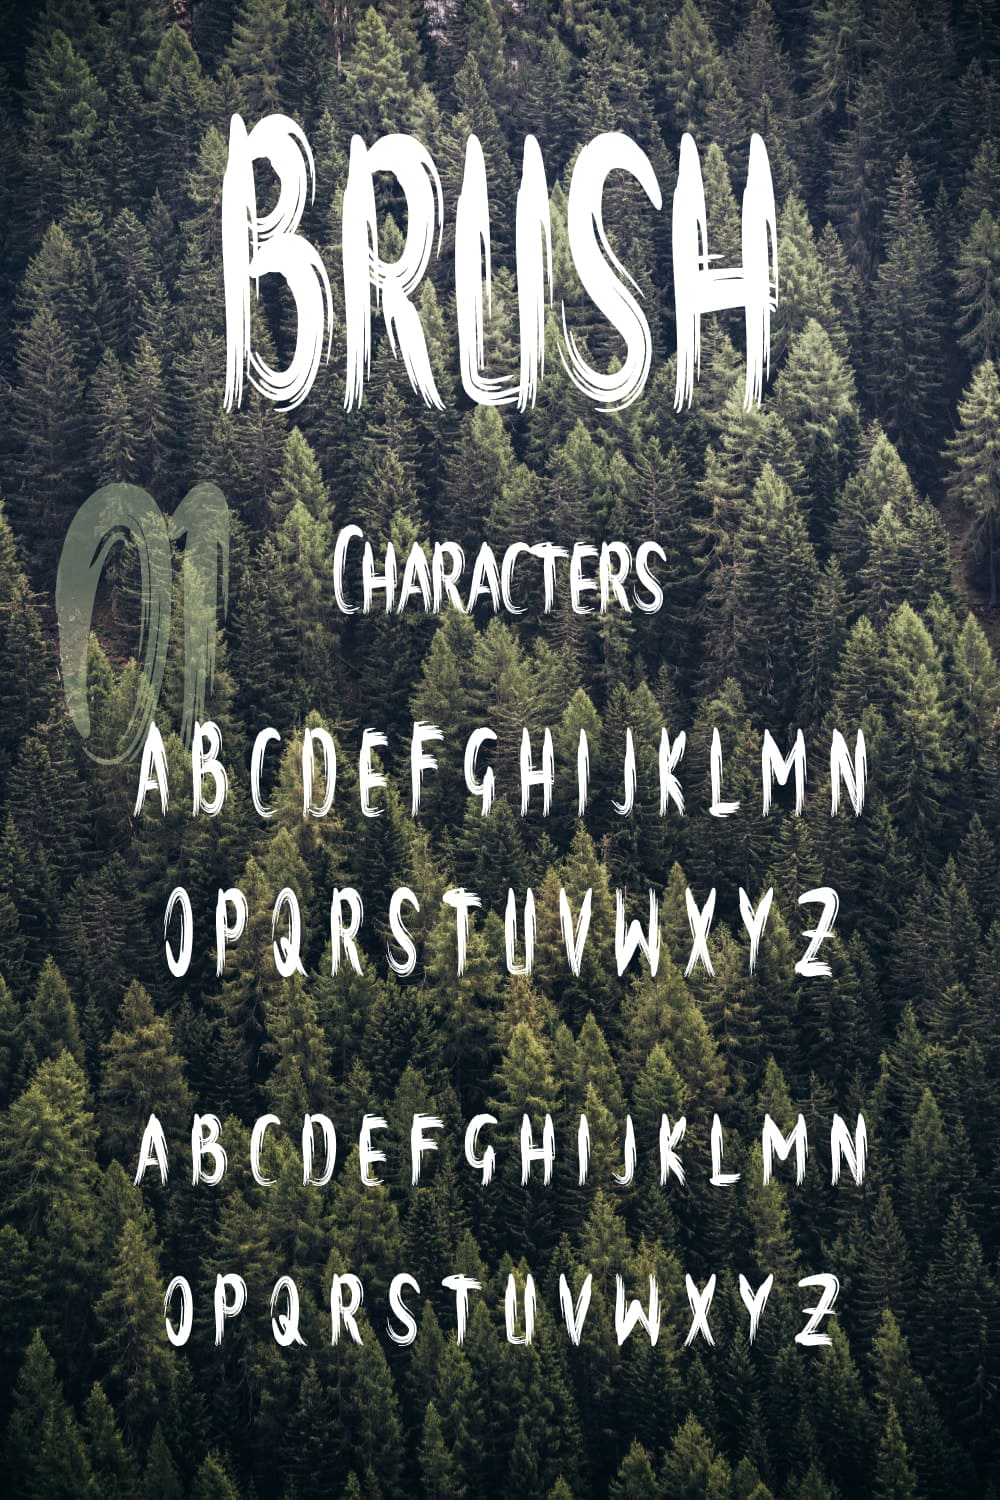 Brush Font